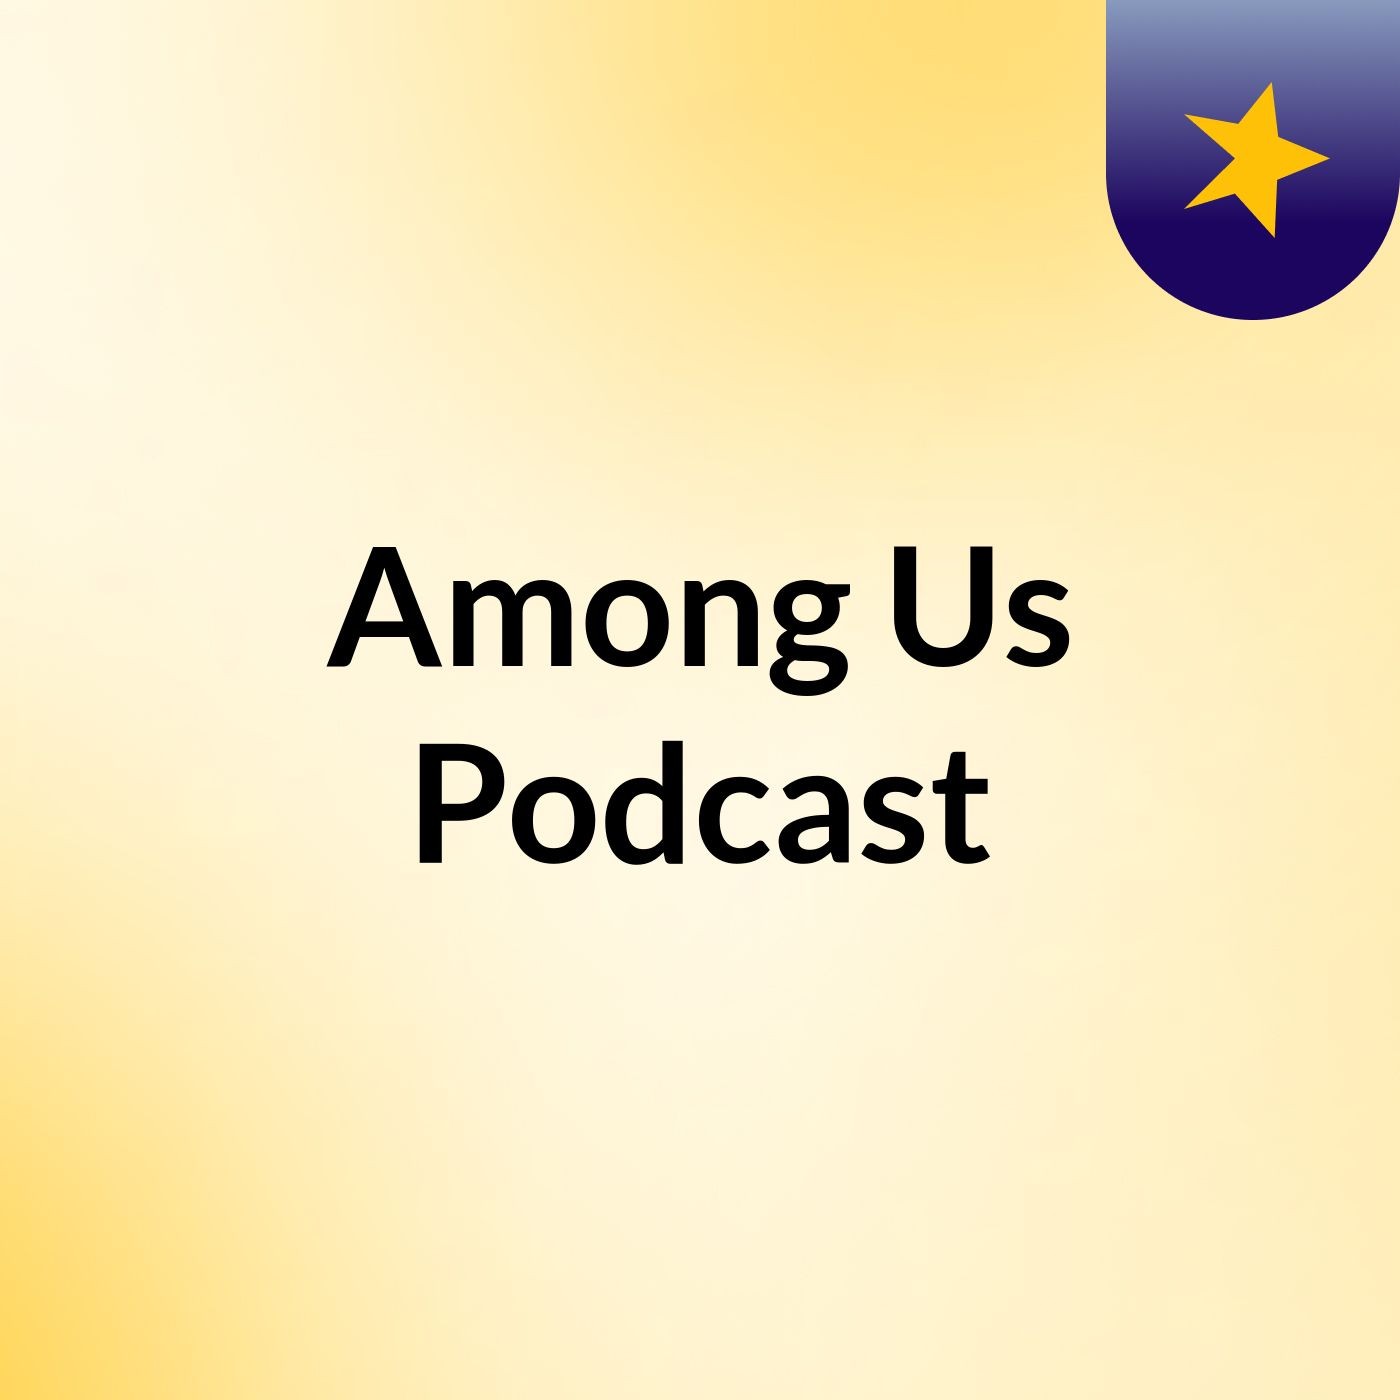 Episode 2 - Among Us Podcast